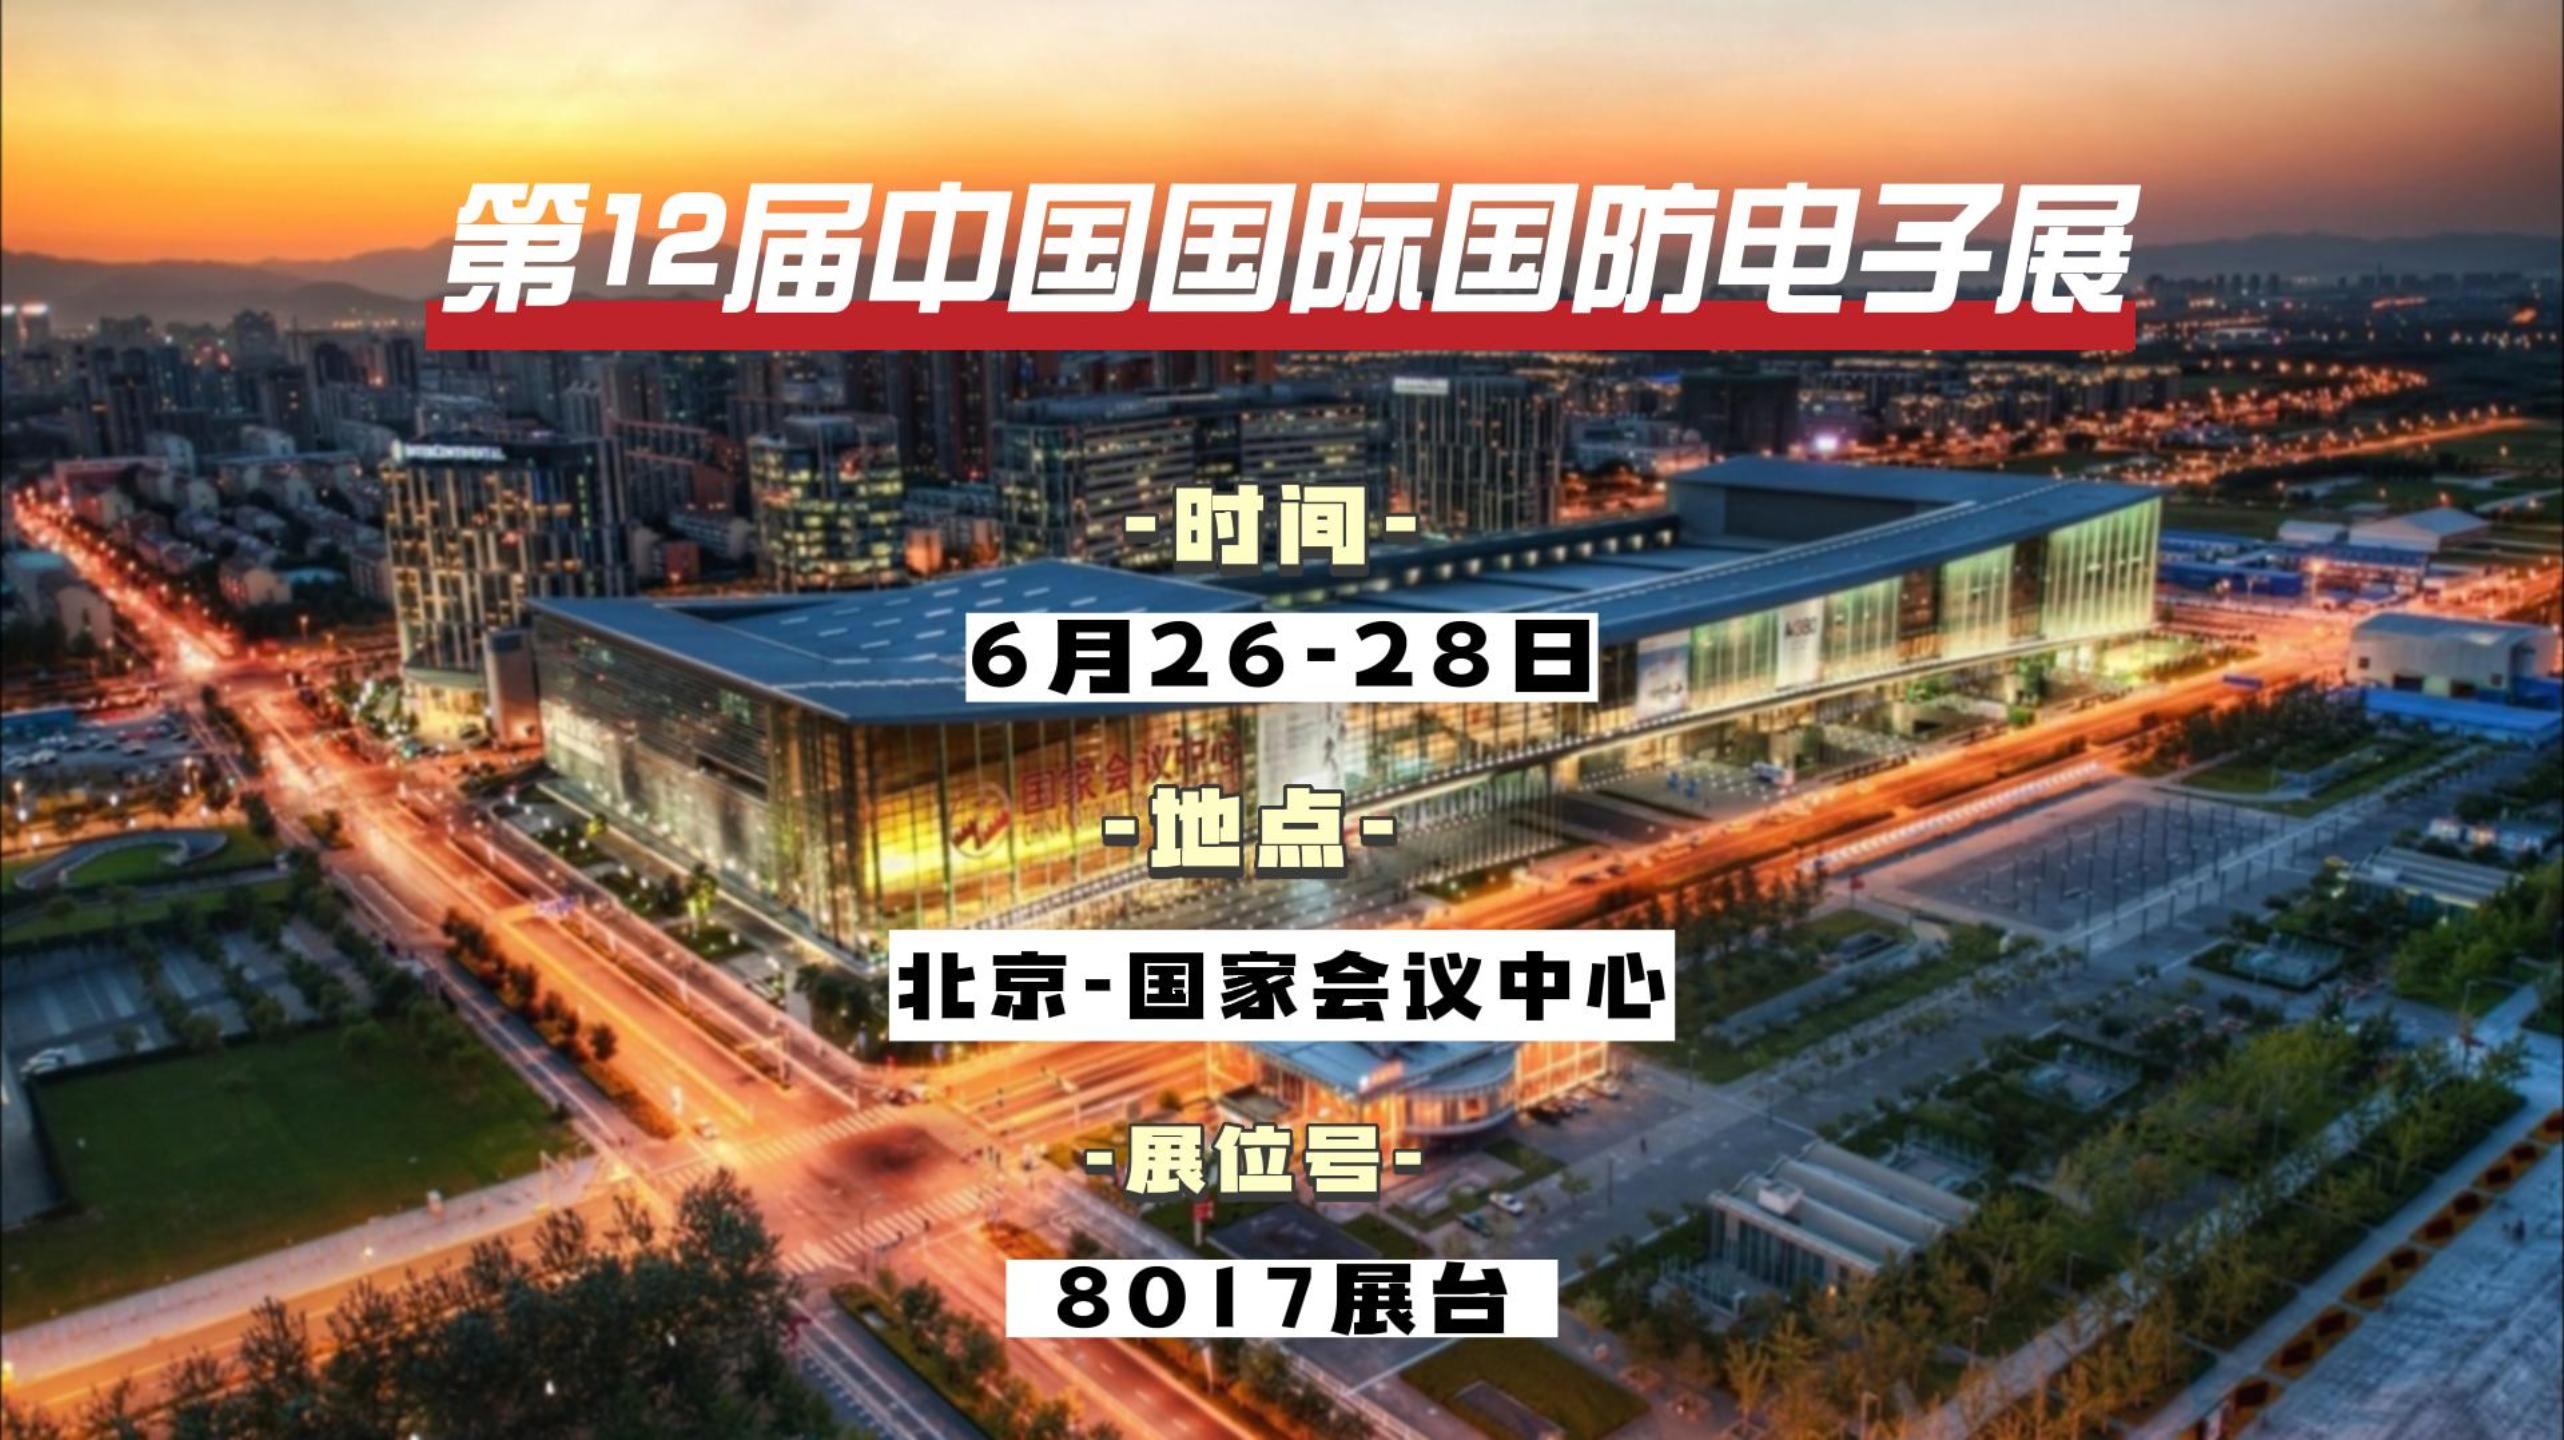 Aigtek安泰电子邀您参加第12届中国国际国防电子展！#展会 #仪器仪表 #功率放大器 